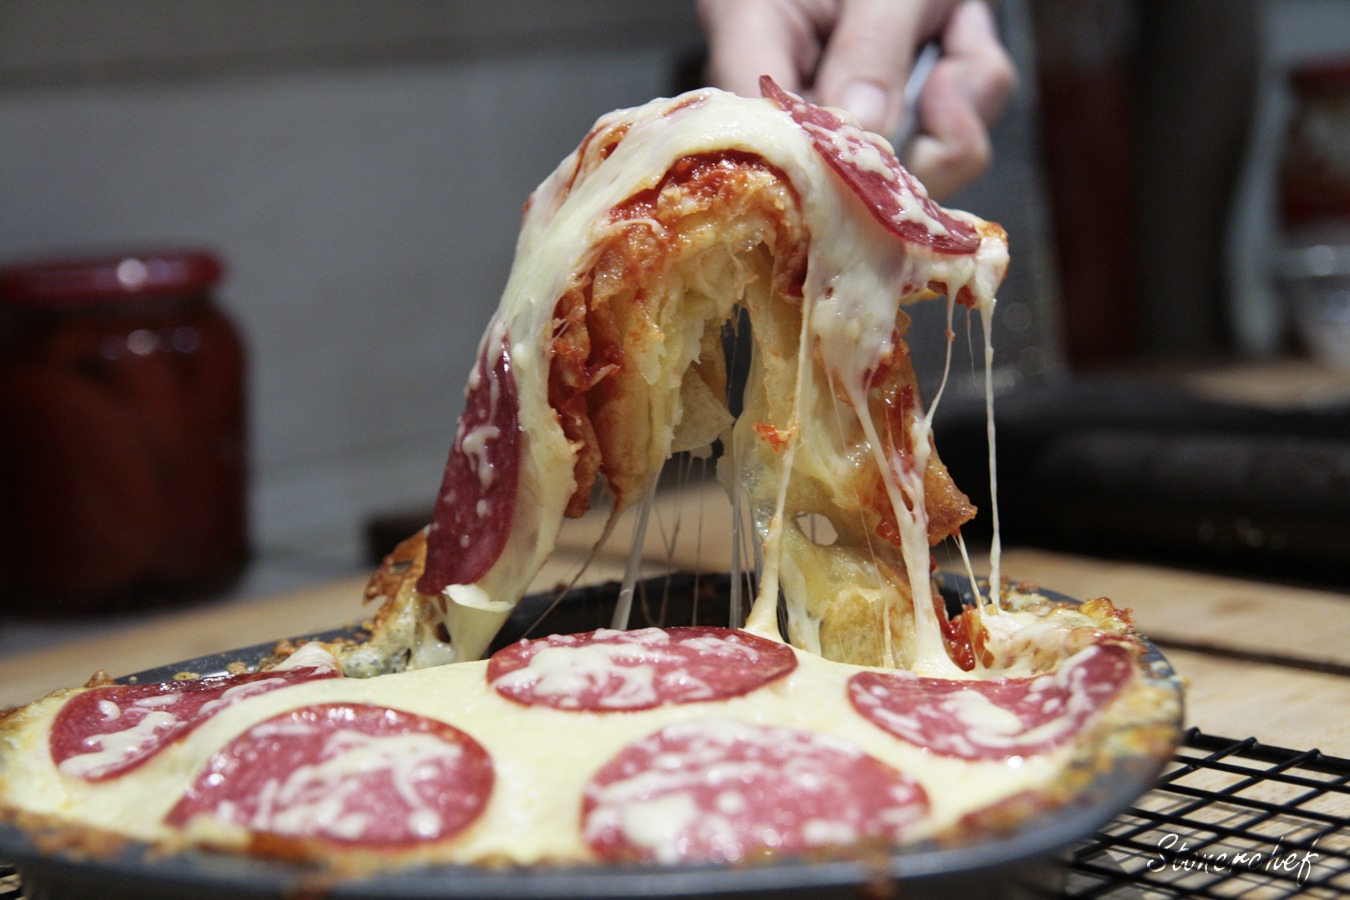 chipizza uginająca się pod ciągnącym się serem